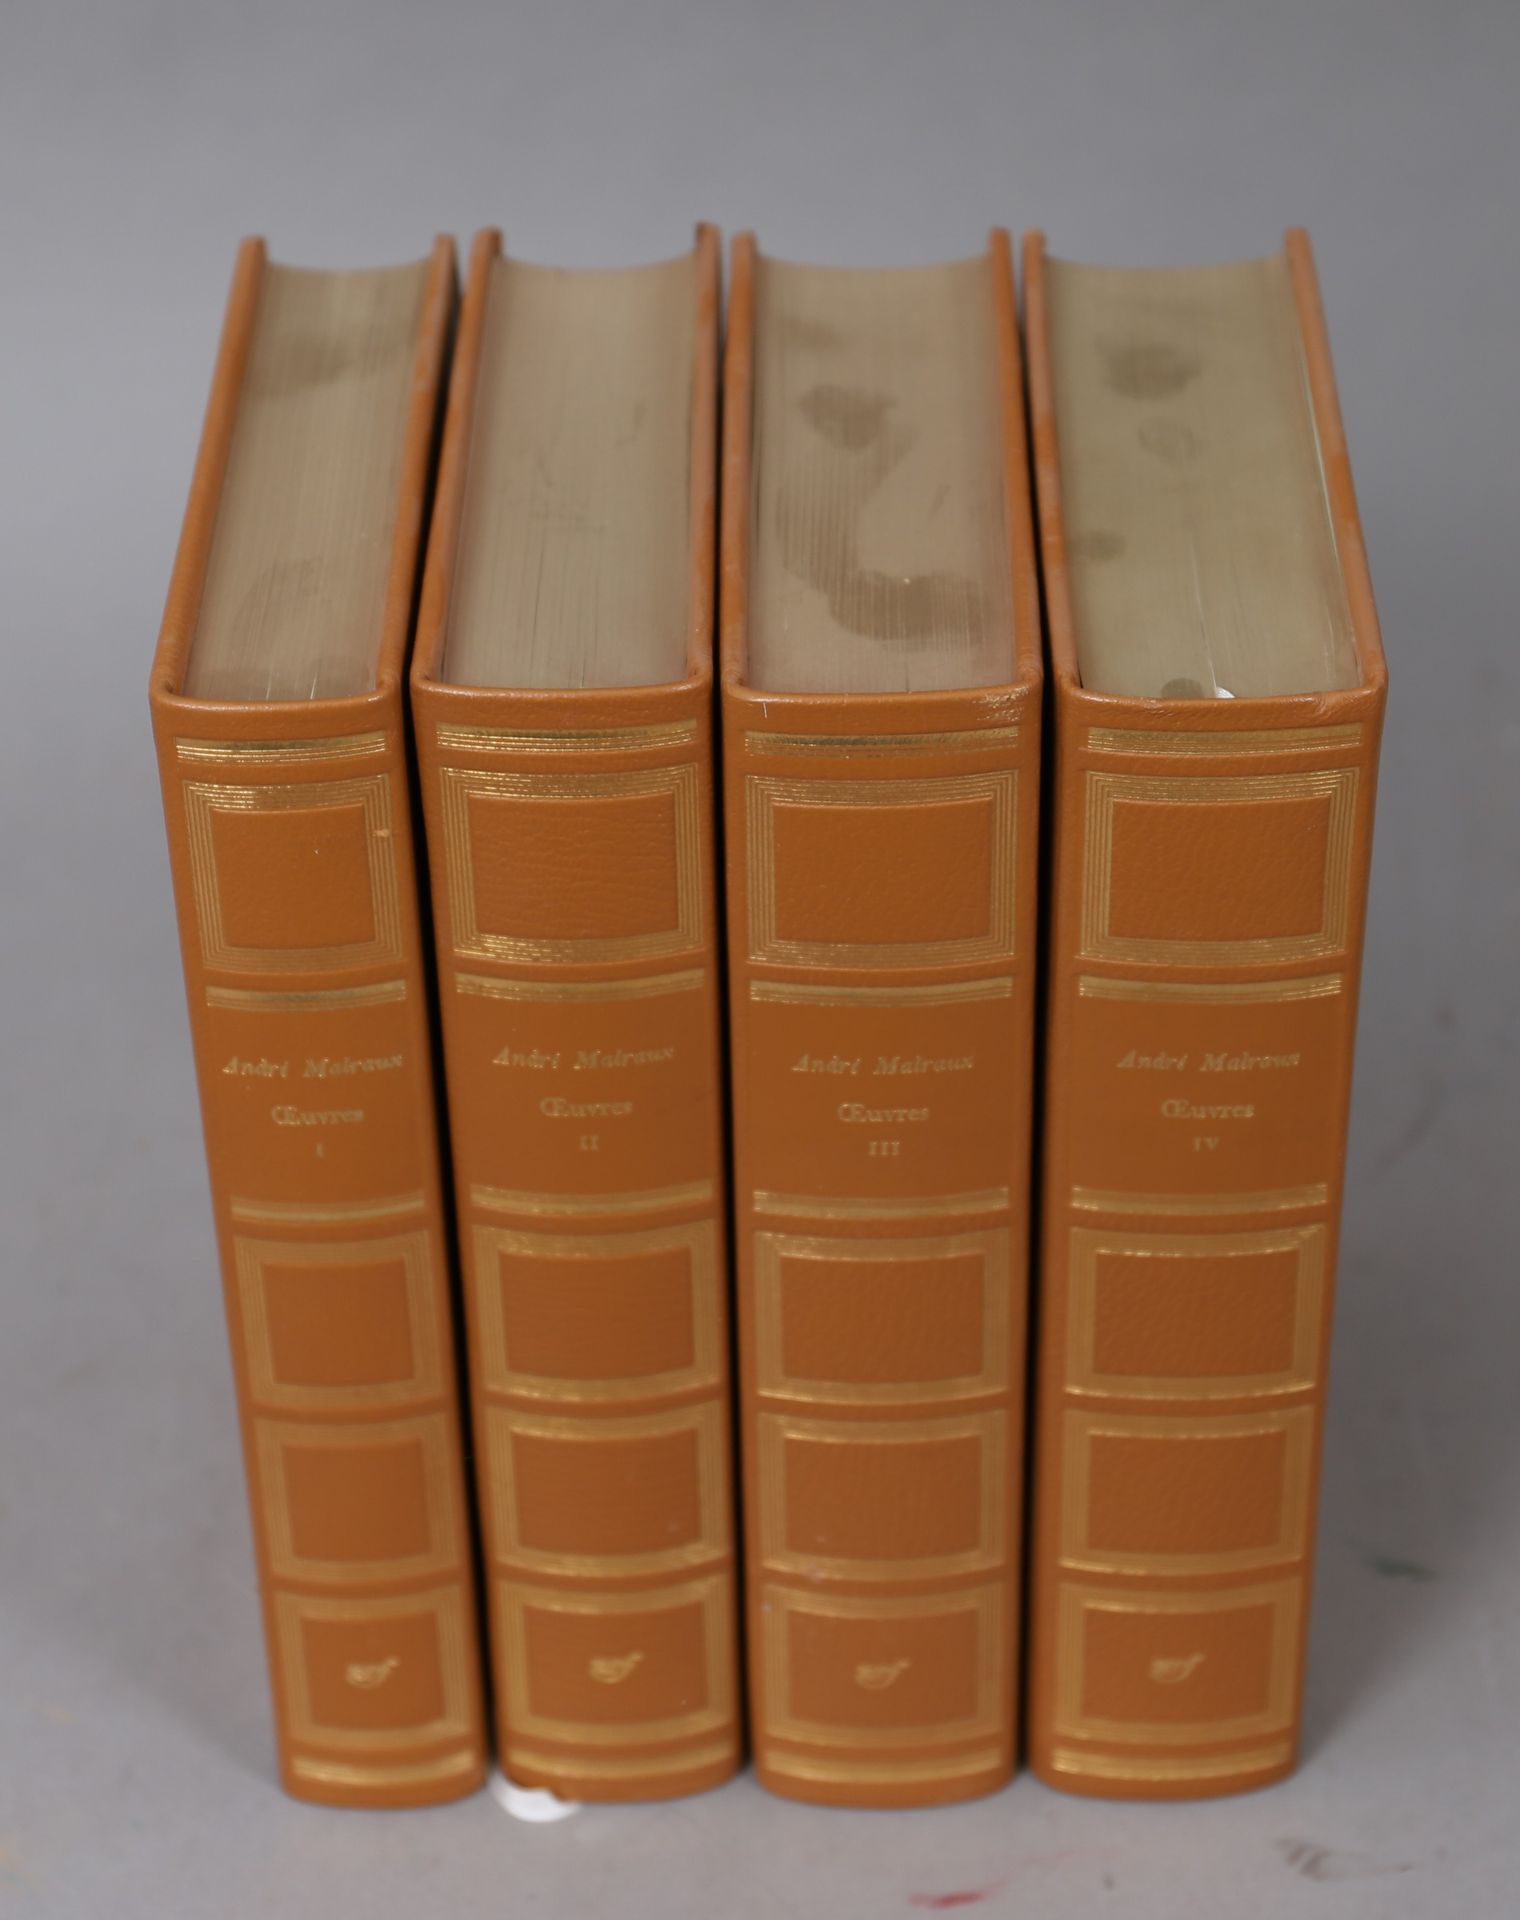 Null Obras de André MALRAUX

NRF

4 volúmenes encuadernados